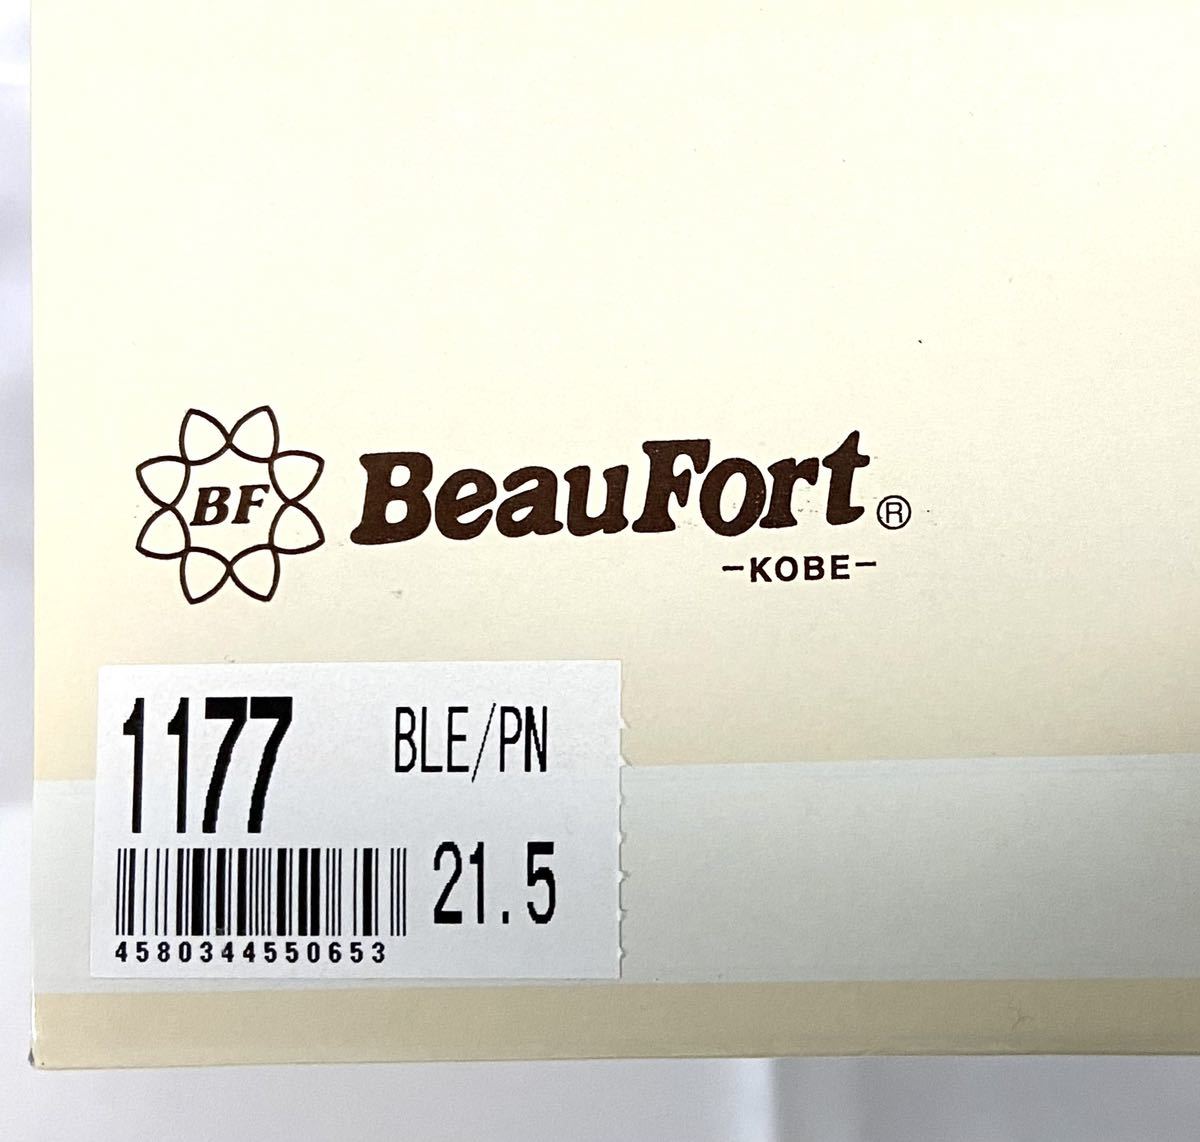 [ не использовался ] BeauFort туфли-лодочки вид four to1177 ремешок 21.5cm туфли с ремешками чёрный черный эмаль Wedge подошва низкая упругость 